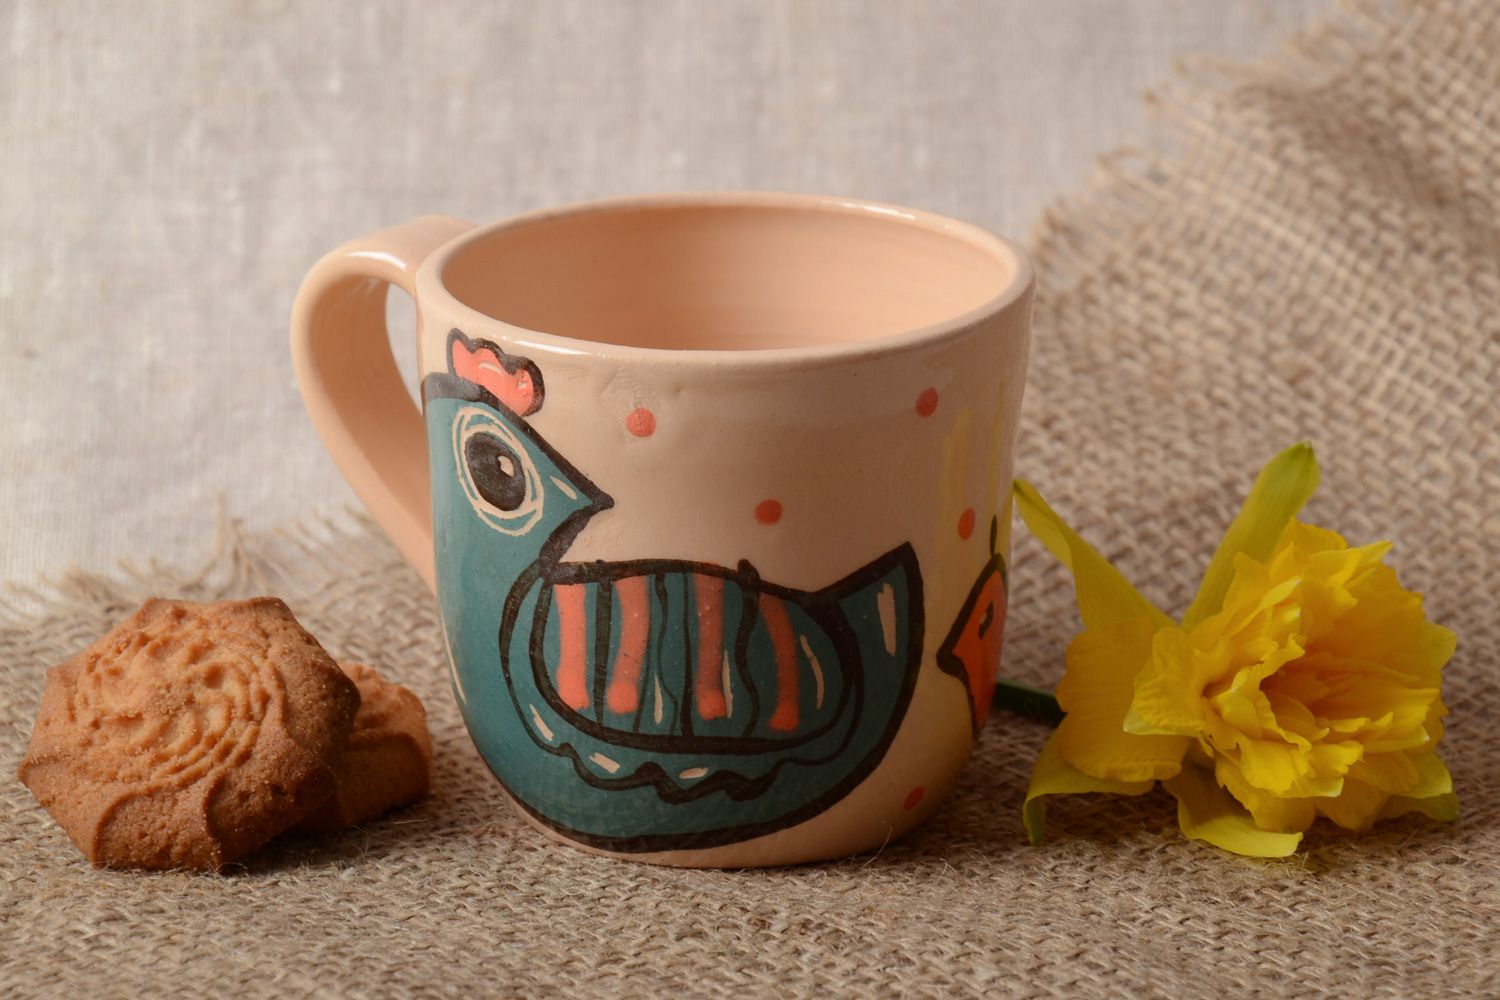 Глиняная чашка расписанная эмалью и покрытая глазурью с рисунком птички фото 1